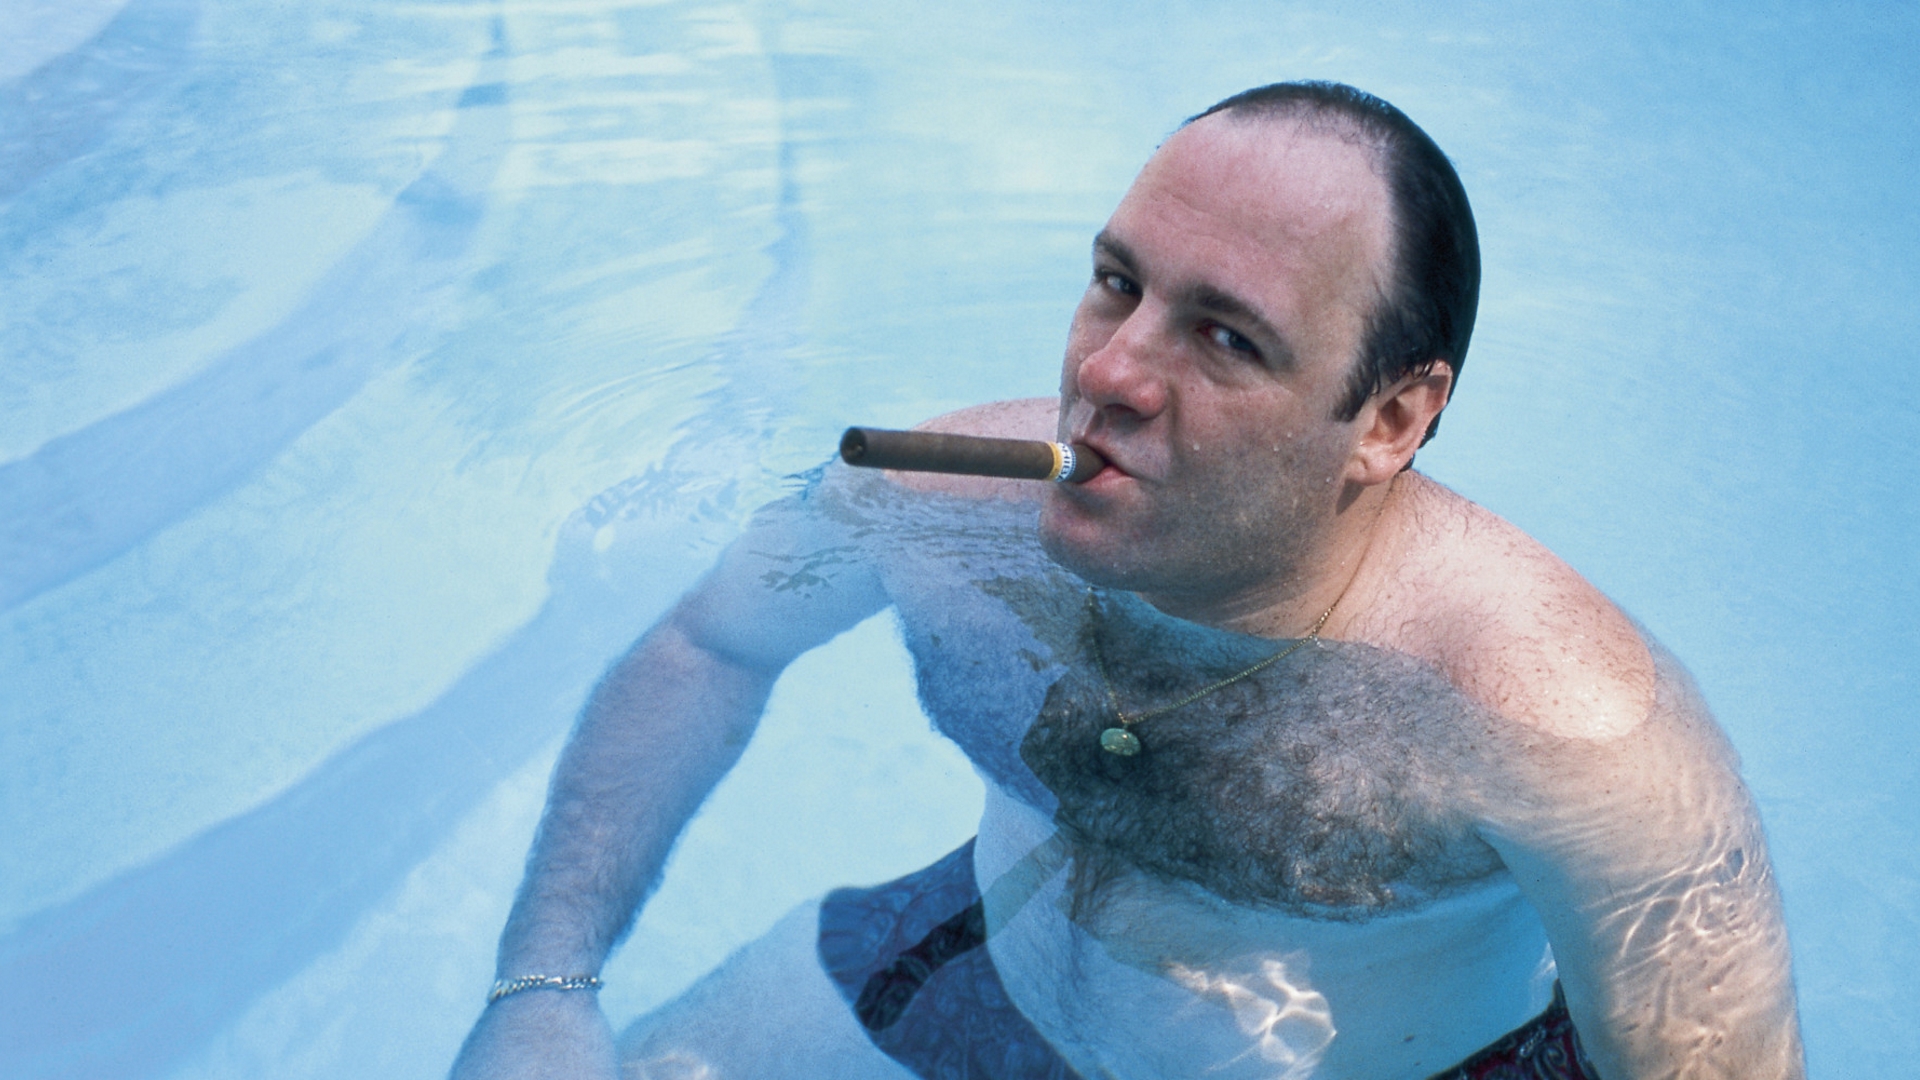 Cigars James Gandolfini Swimming Pool The Sopranos Tony Soprano Cyan 1920x1080